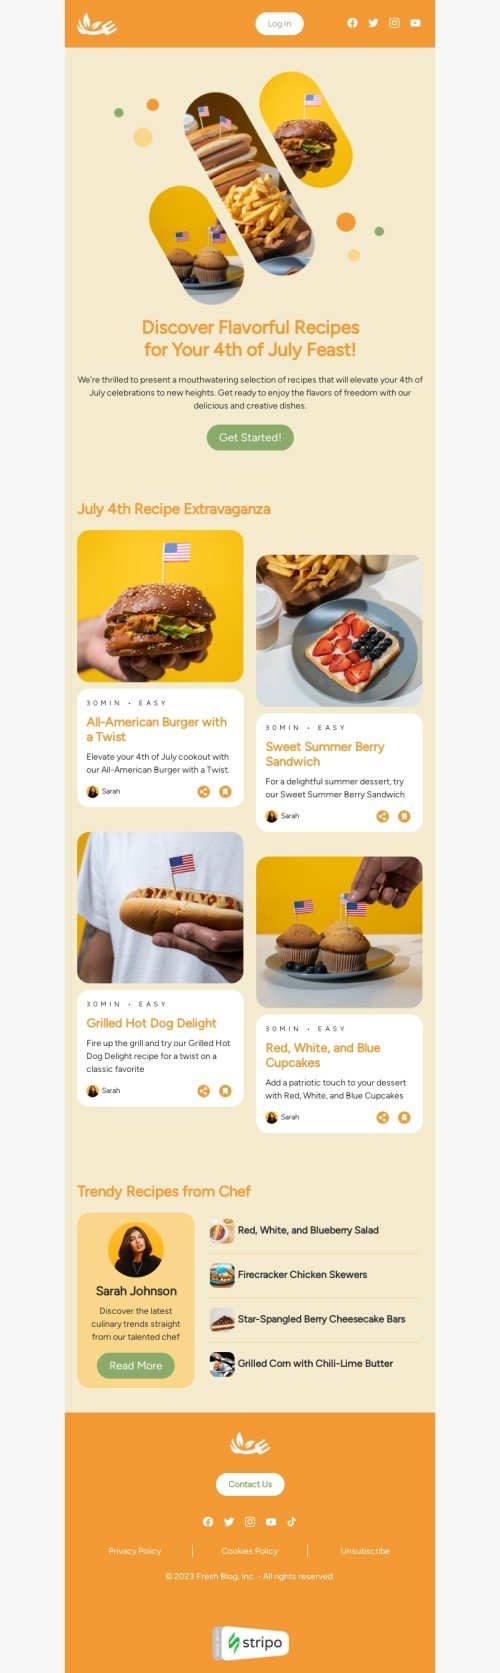 Шаблон письма к празднику День независимости «Феерия рецептов к 4 июля» для индустрии «Еда» мобильный вид